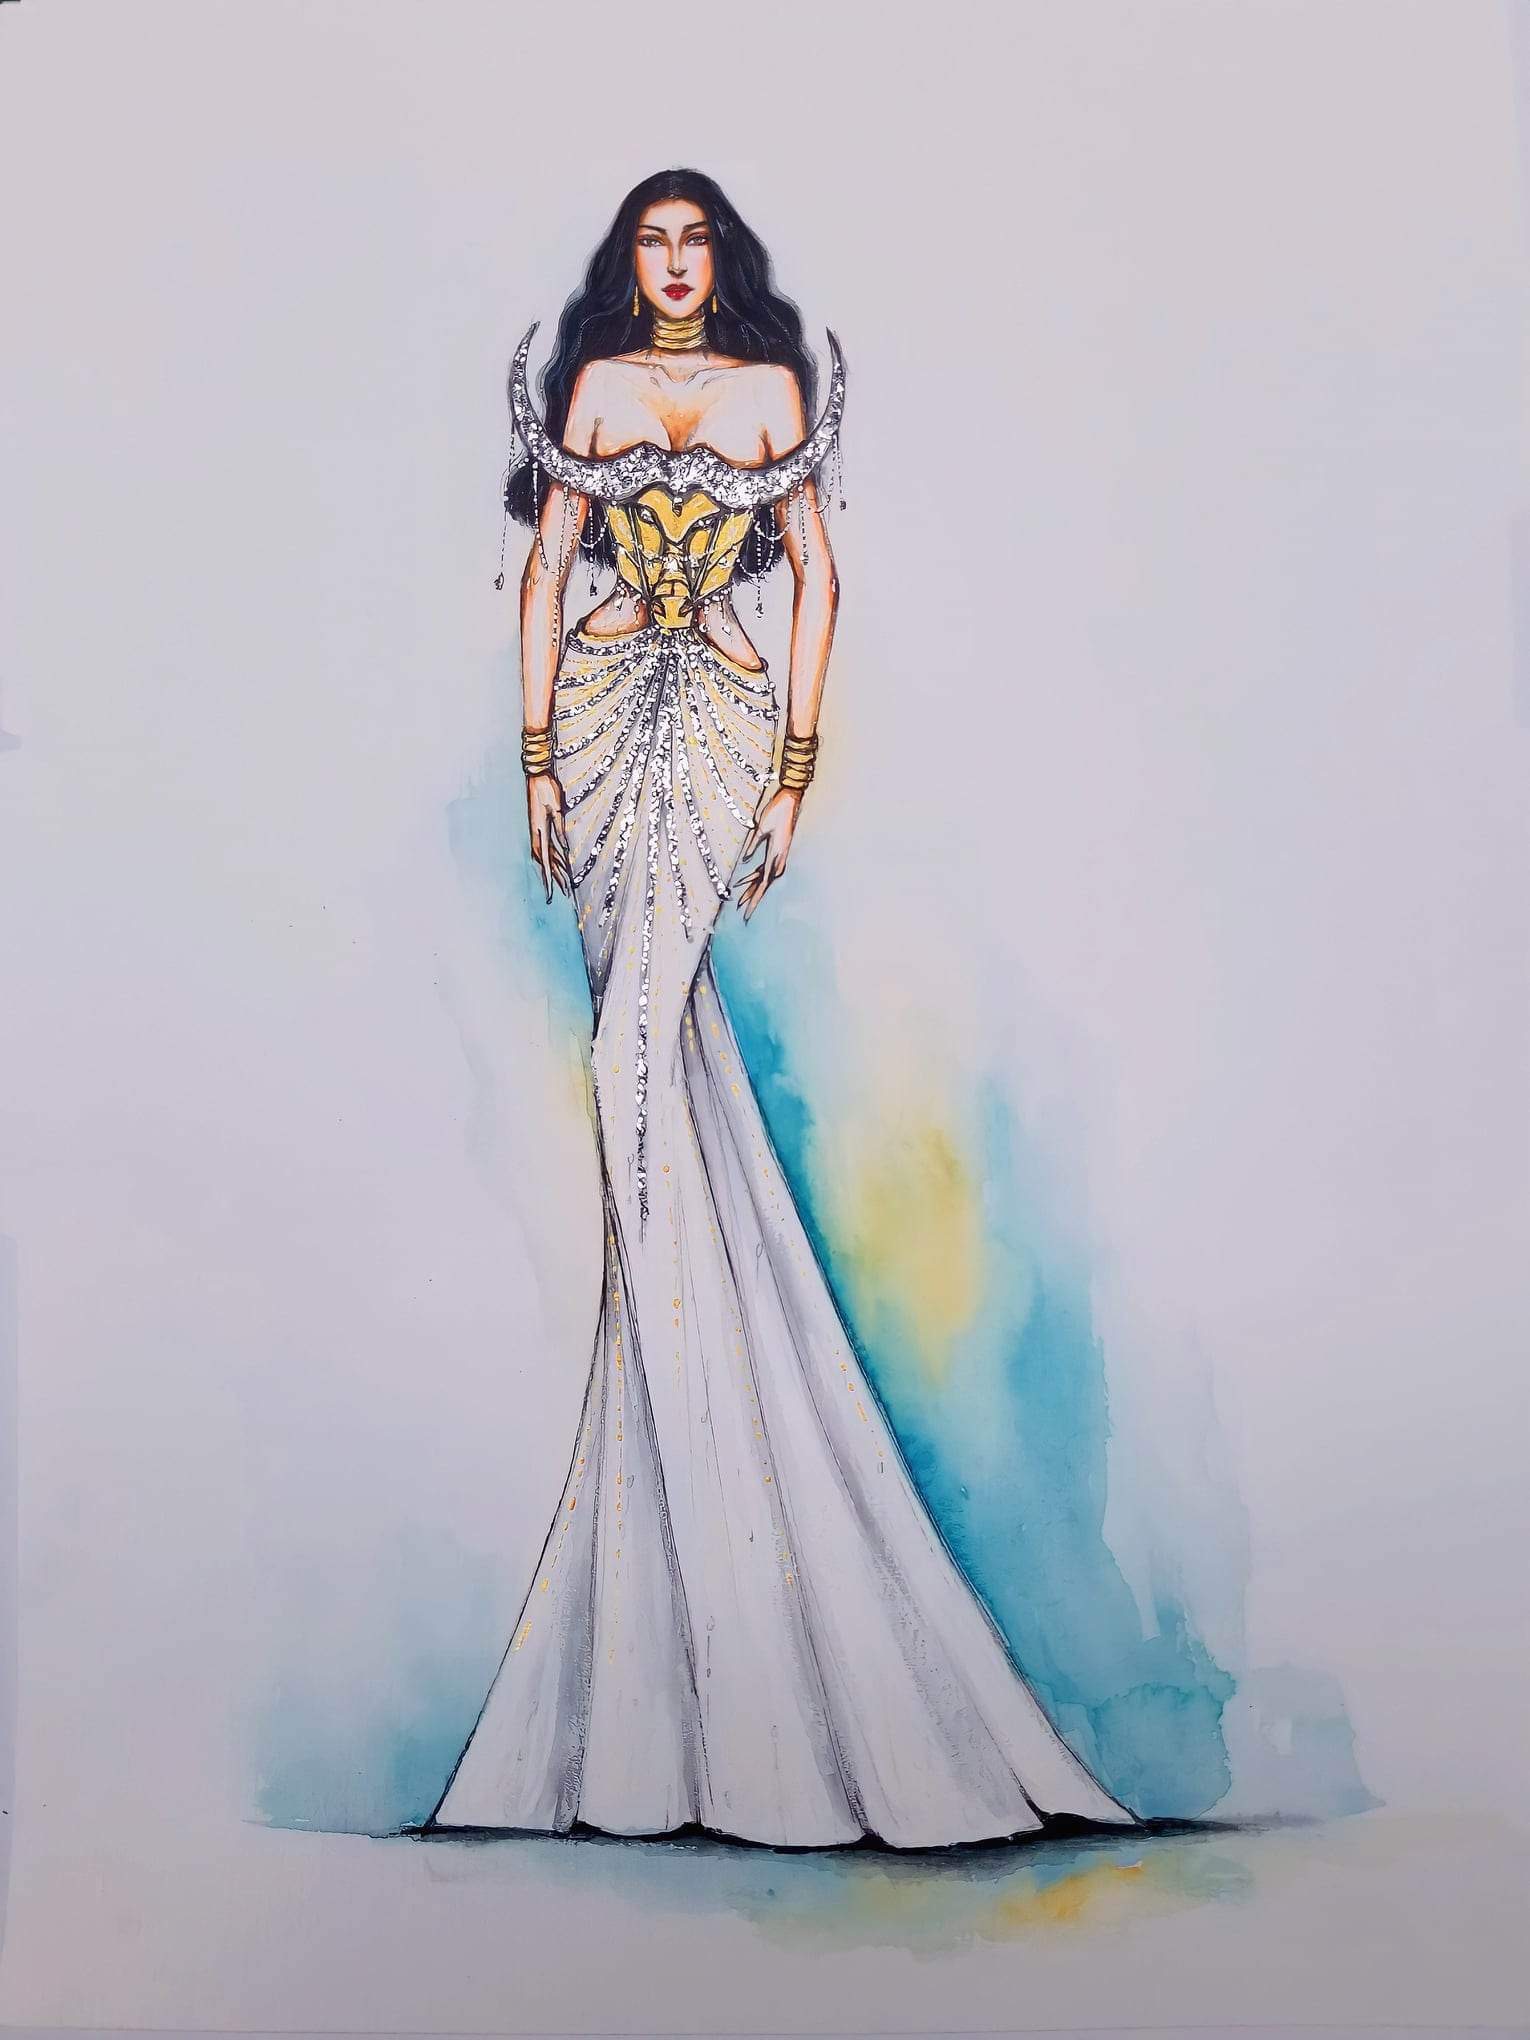 Hé lộ 5 thiết kế đầm dạ hội cho Đỗ Thị Hà tại Miss World 2021